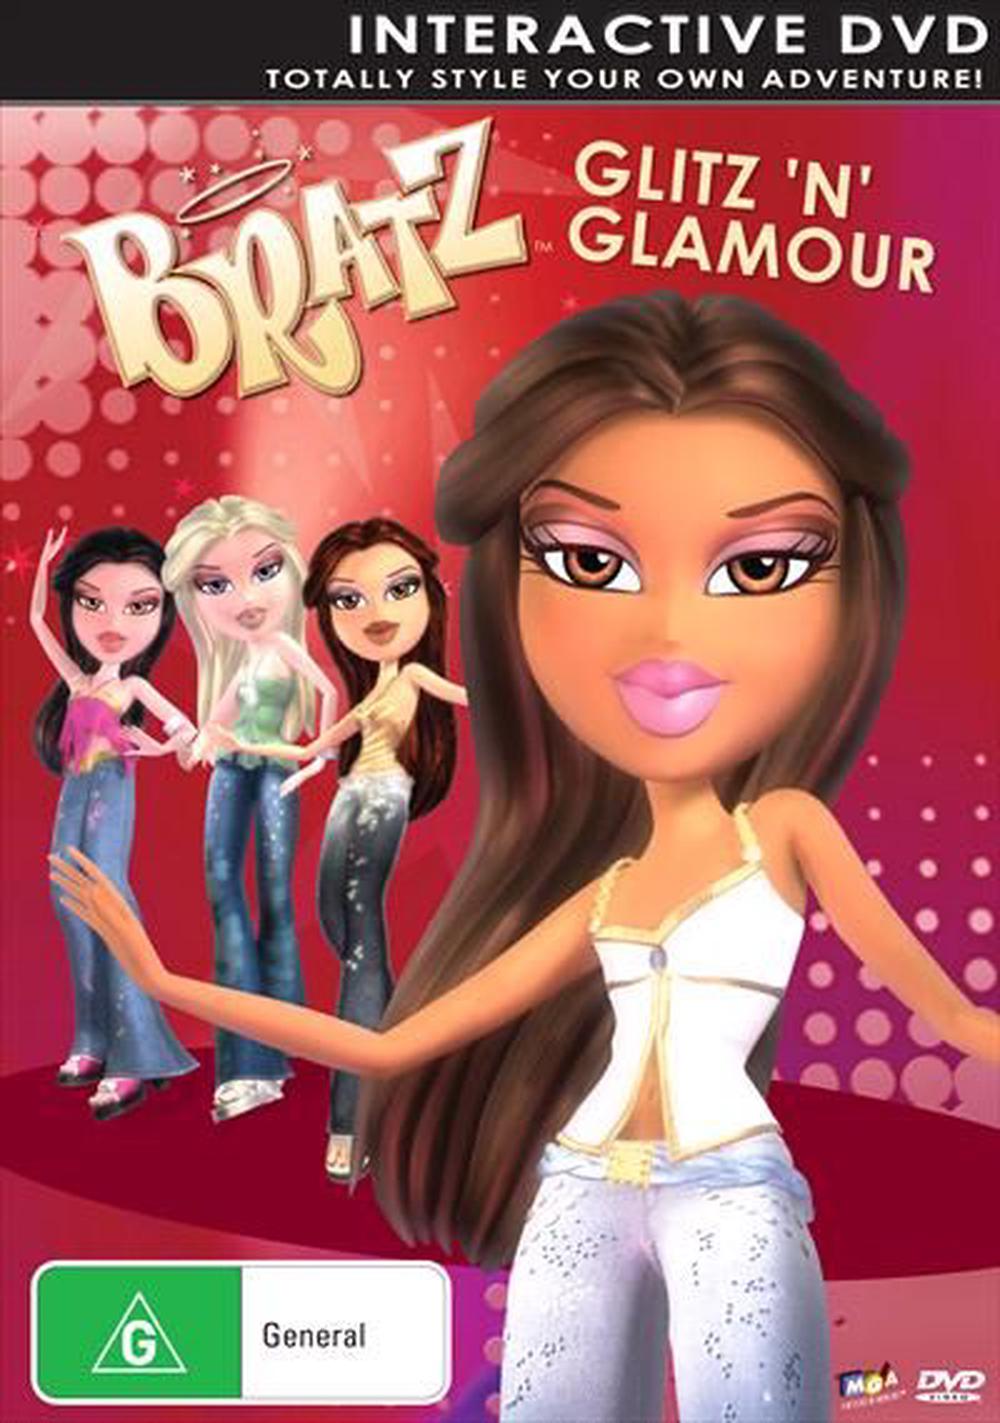 DVD Glam Girls